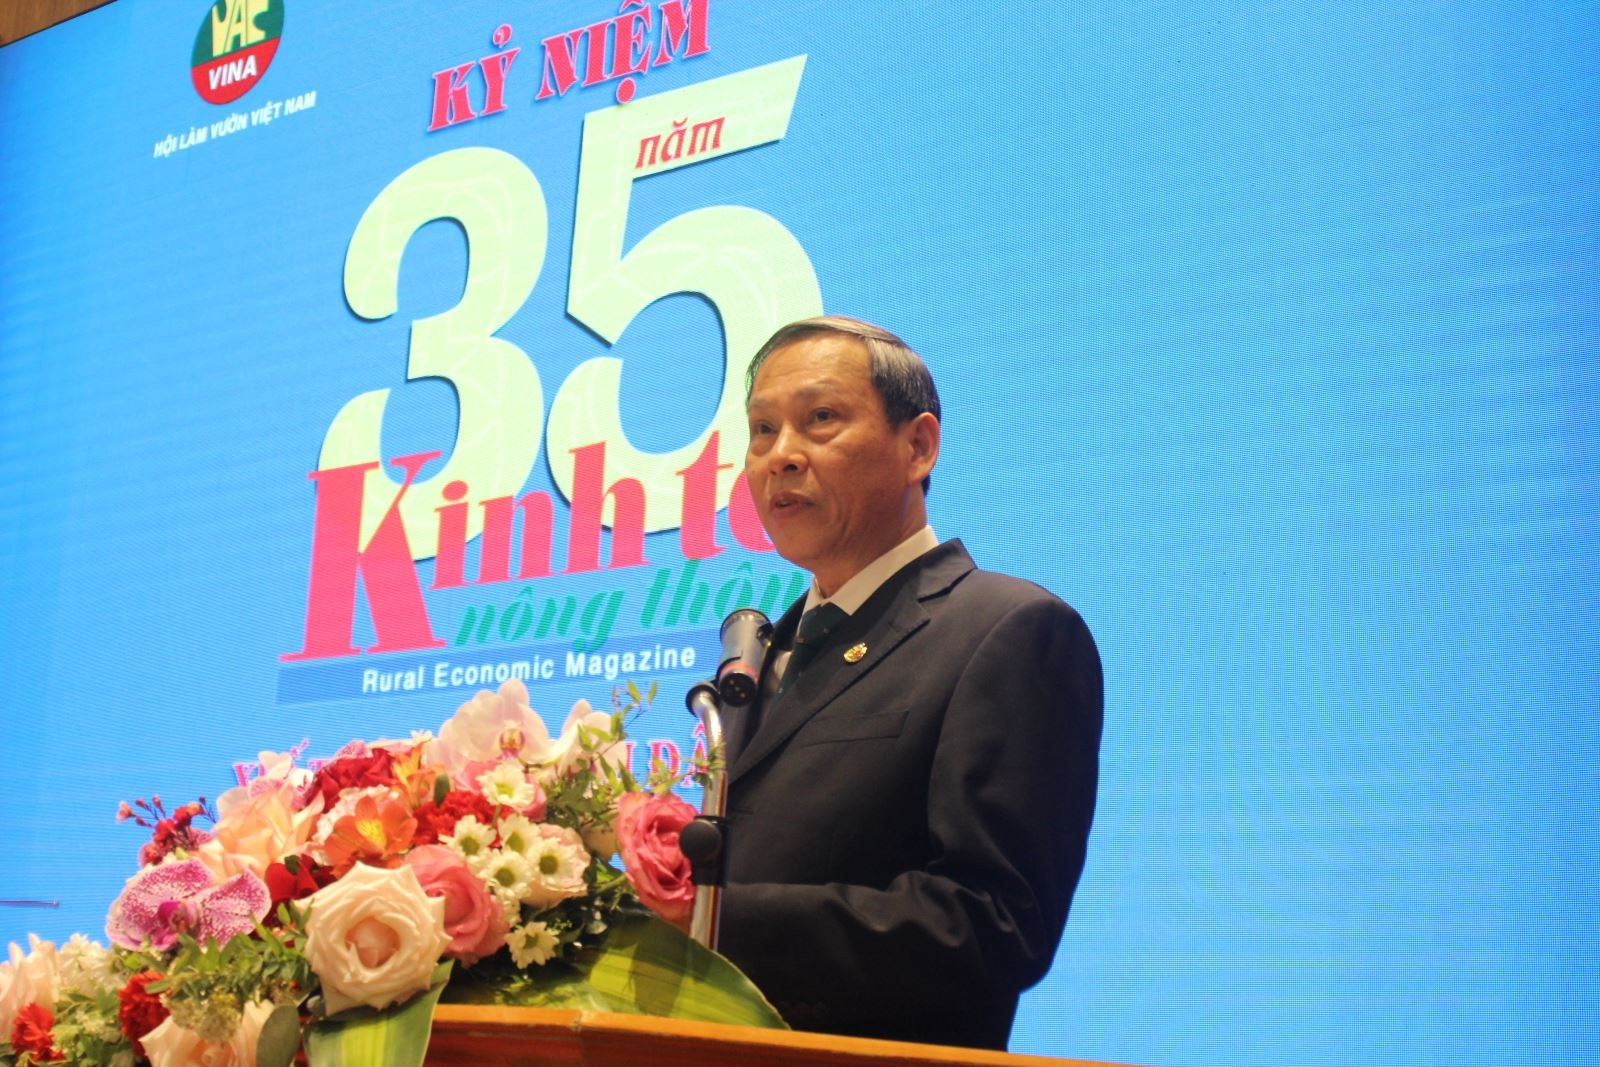 Ông Nguyễn Anh Tuấn, Tổng biên tập Tạp chí Kinh tế nông thôn chia sẻ tại lễ kỷ niệm.